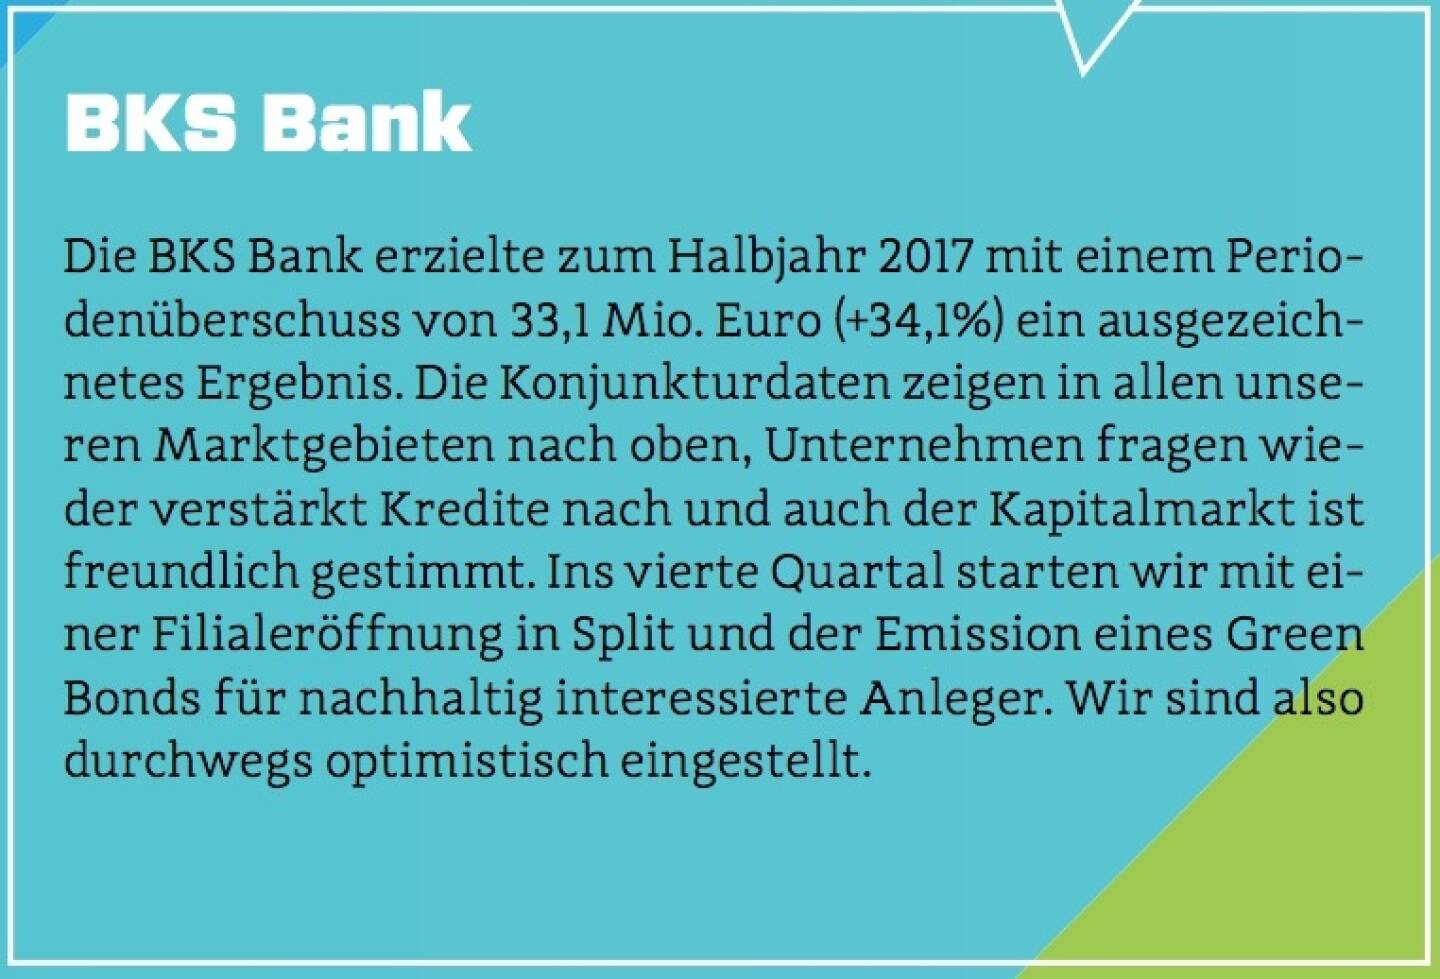 BKS Bank - Die BKS Bank erzielte zum Halbjahr 2017 mit einem Periodenüberschuss von 33,1 Mio. Euro (+34,1%) ein ausgezeichnetes Ergebnis. Die Konjunkturdaten zeigen in allen unseren Marktgebieten nach oben, Unternehmen fragen wieder verstärkt Kredite nach und auch der Kapitalmarkt ist freundlich gestimmt. Ins vierte Quartal starten wir mit einer Filialeröffnung in Split und der Emission eines Green Bonds für nachhaltig interessierte Anleger. Wir sind also durchwegs optimistisch eingestellt.